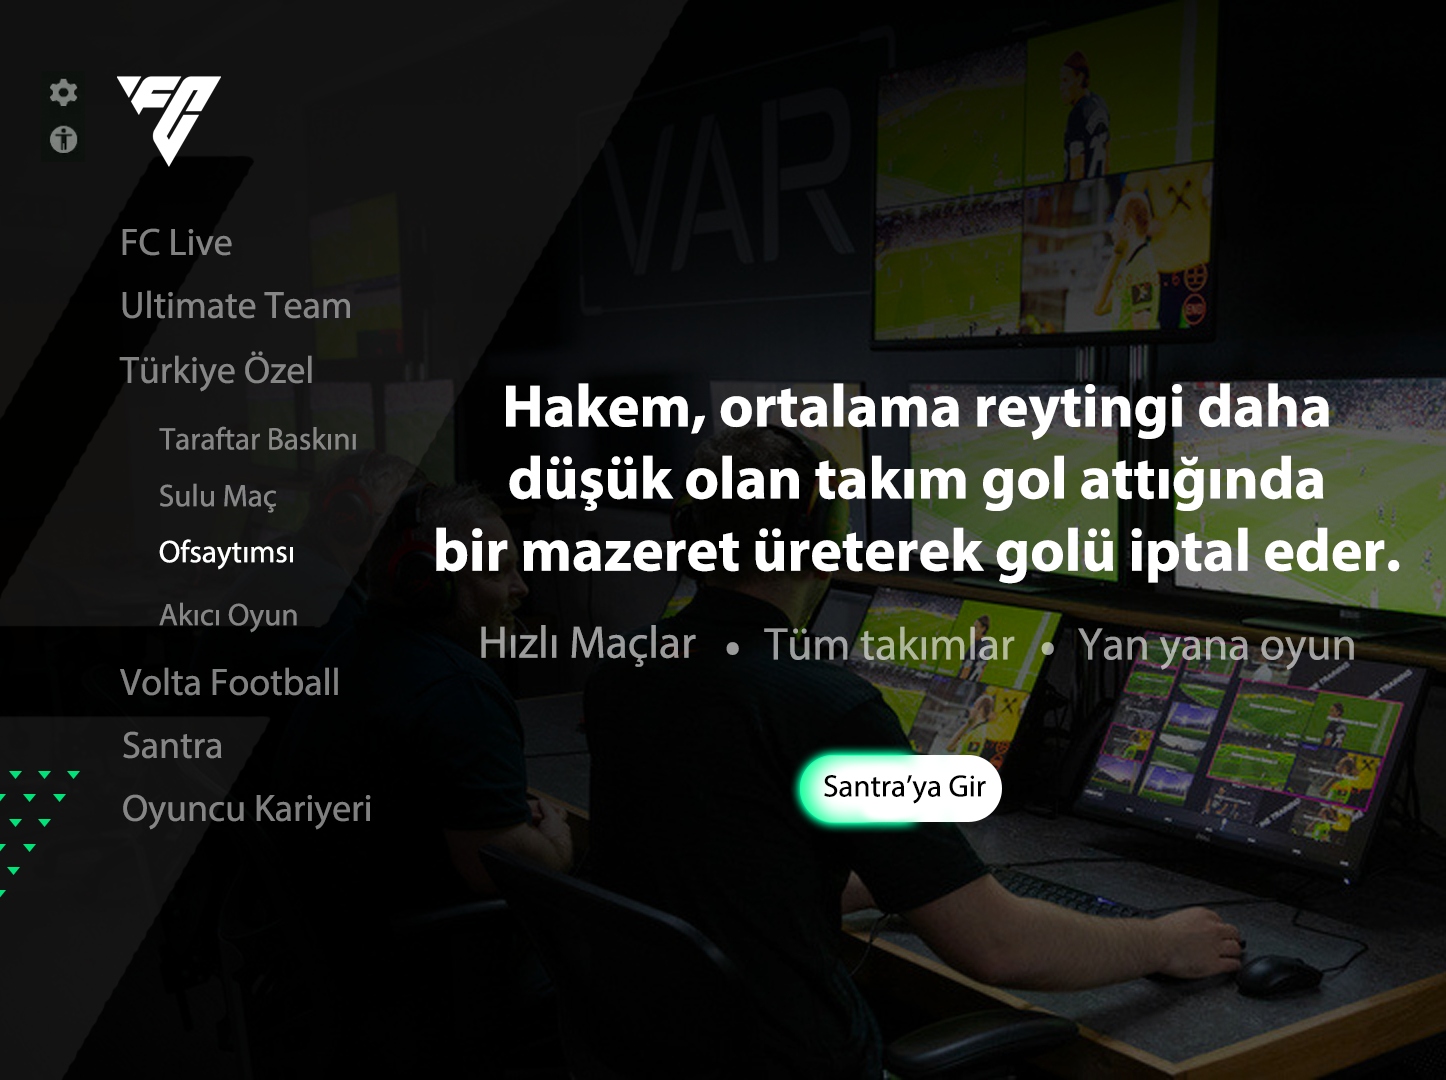 Meral Erden: Böyle Lige Böyle Oyun: Fc 24'Te Türk Futboluna Özel Modlar Ve Taktikler Olsa Nasıl Olurdu? 5